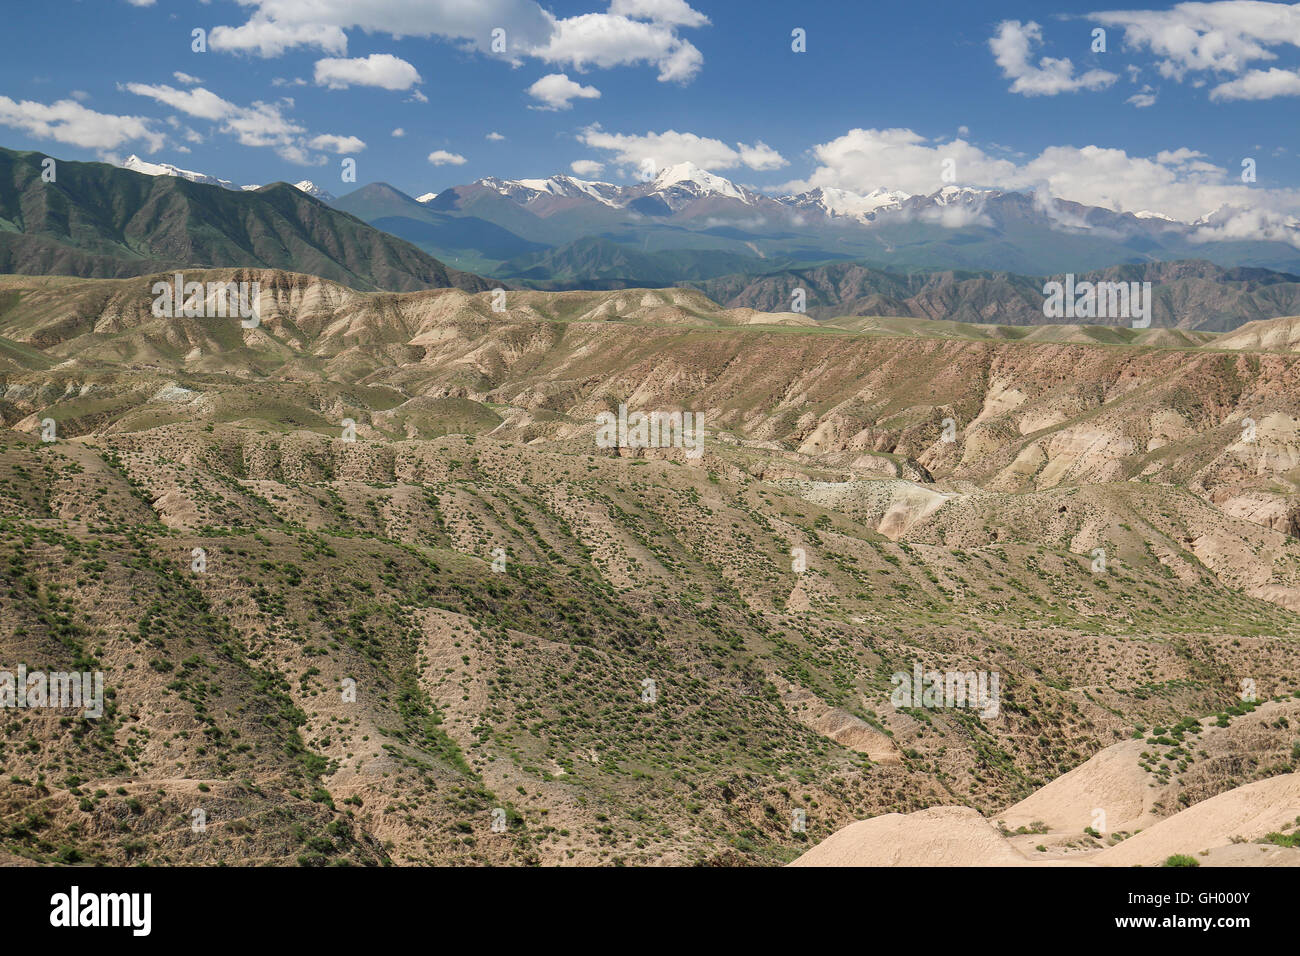 Issyk-Kul See in Kirgisistan Umgebung. Terskey Alatau, Tian Shan-Gebirge in Kirgisien, Zentralasien Stockfoto